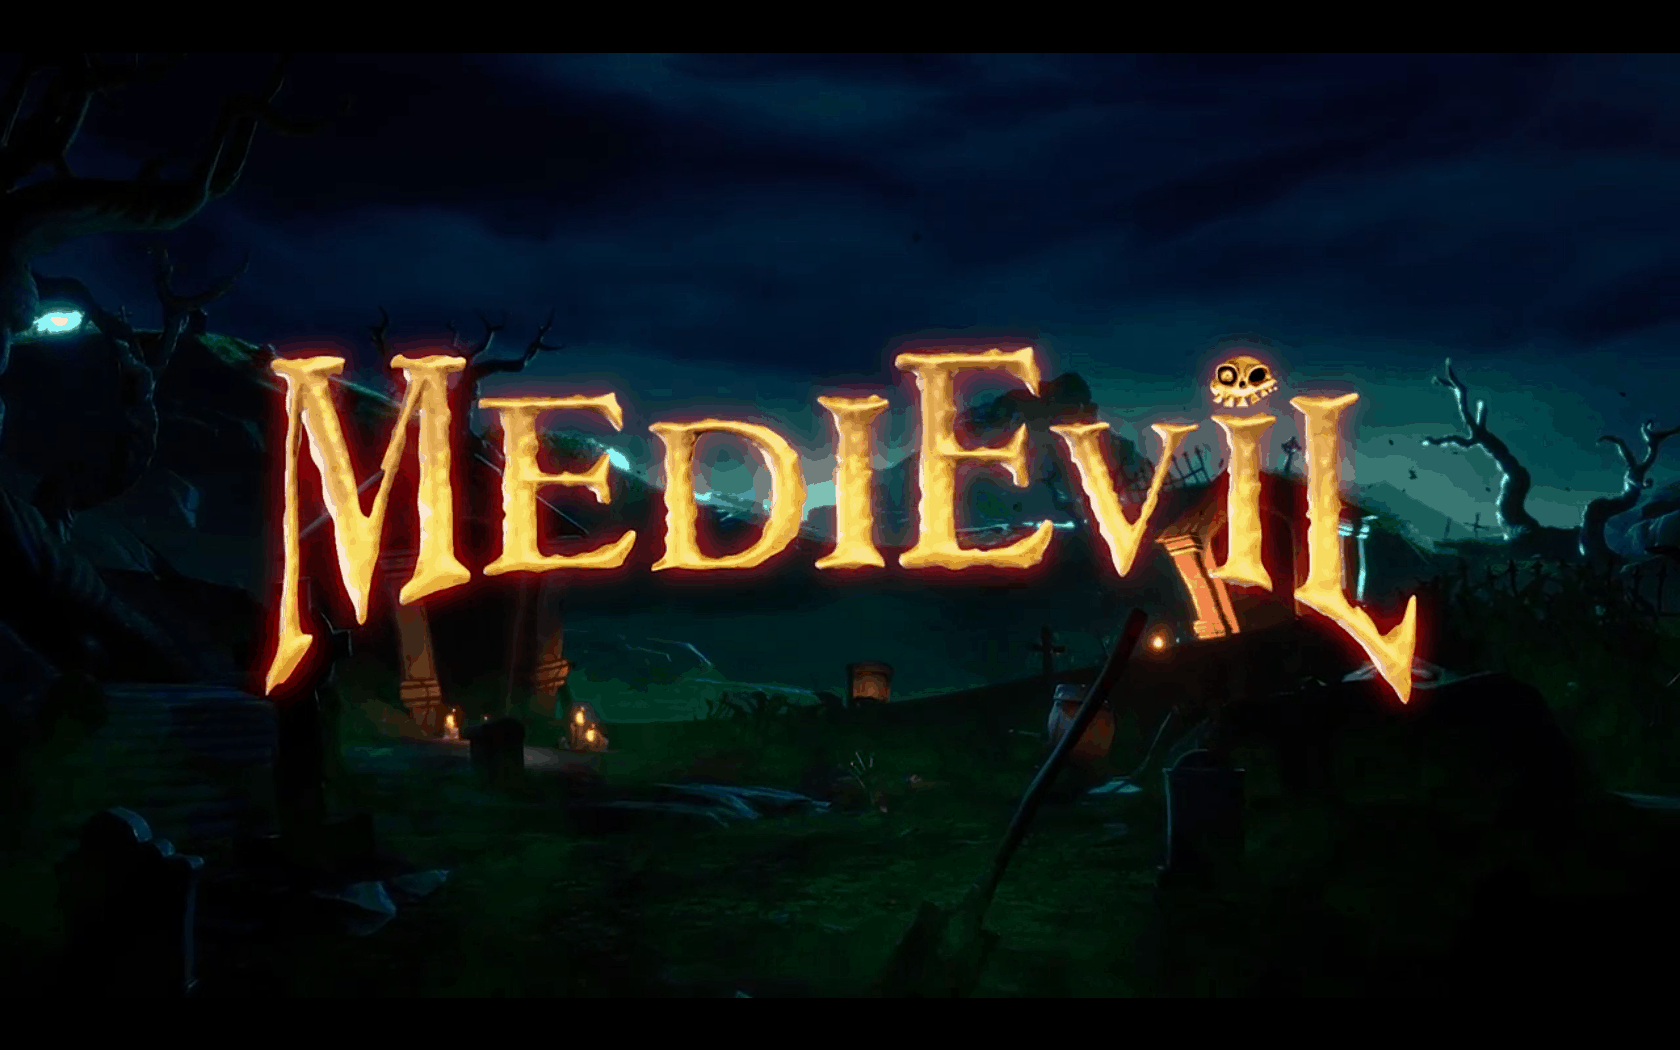 Medievil remake trailer